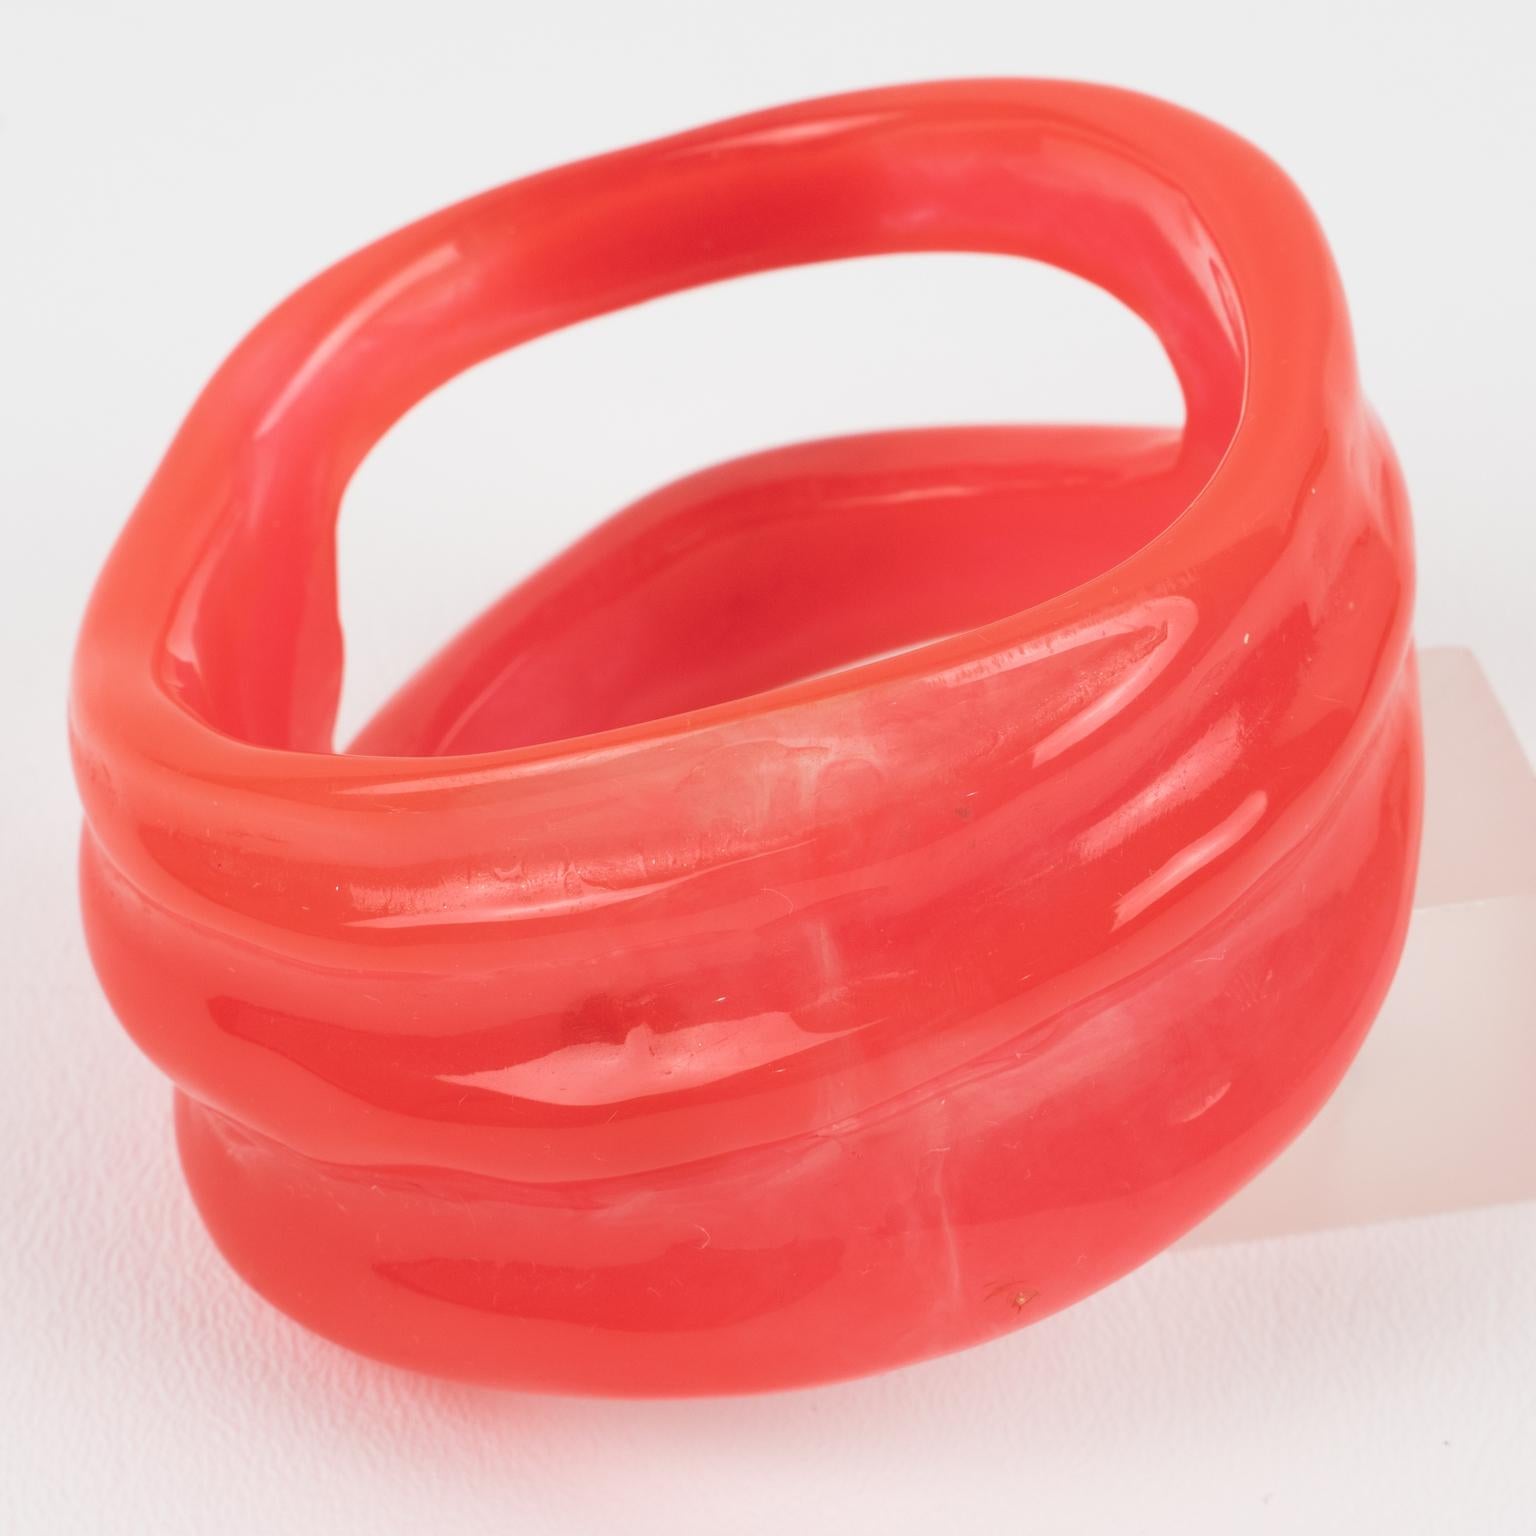 Un bracelet-bracelet futuriste de l'ère spatiale de Christian Lacroix Paris. Conception structurelle et sculptée de forme libre et massive en résine ou Lucite de couleur rose-melon d'eau, avec tourbillons et transparence. Signé à l'intérieur avec le